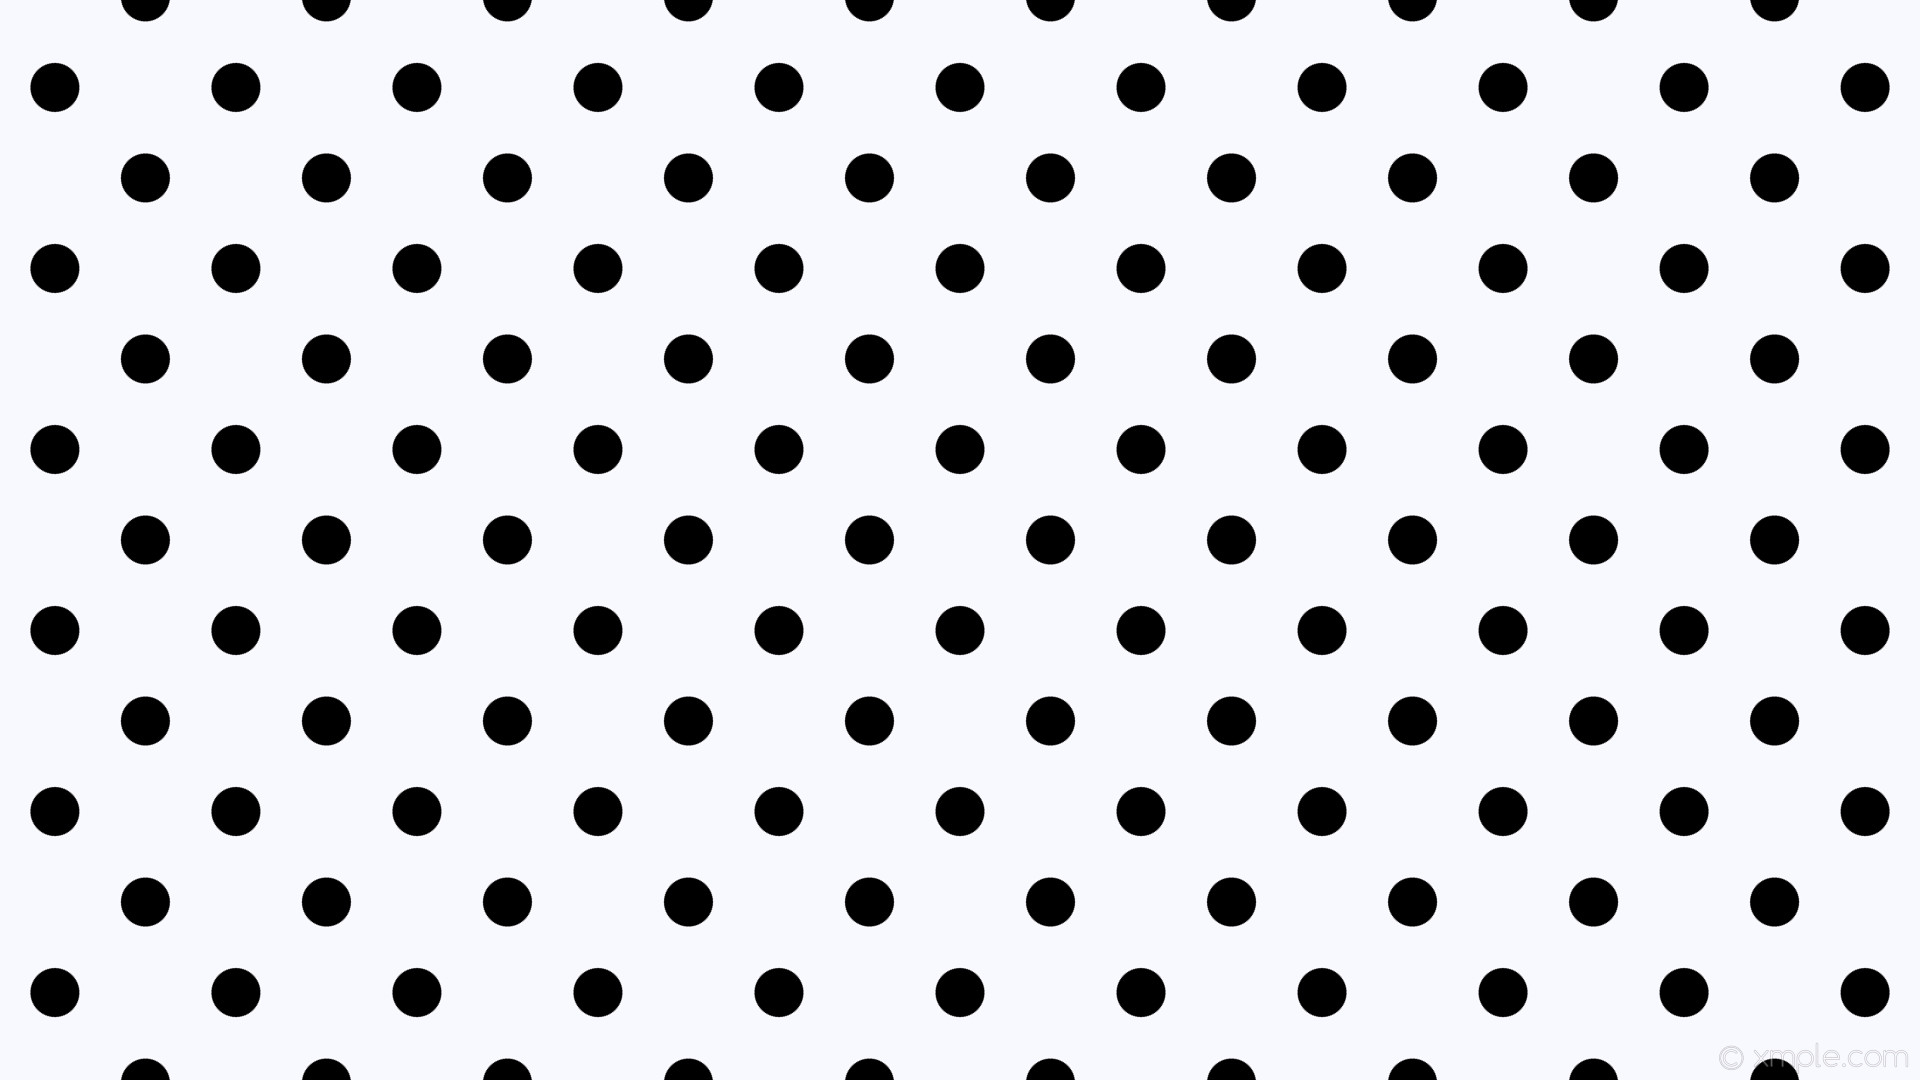 1920x1080 wallpaper dots black white spots polka ghost white #f8f8ff #000000 315Â°  49px 128px